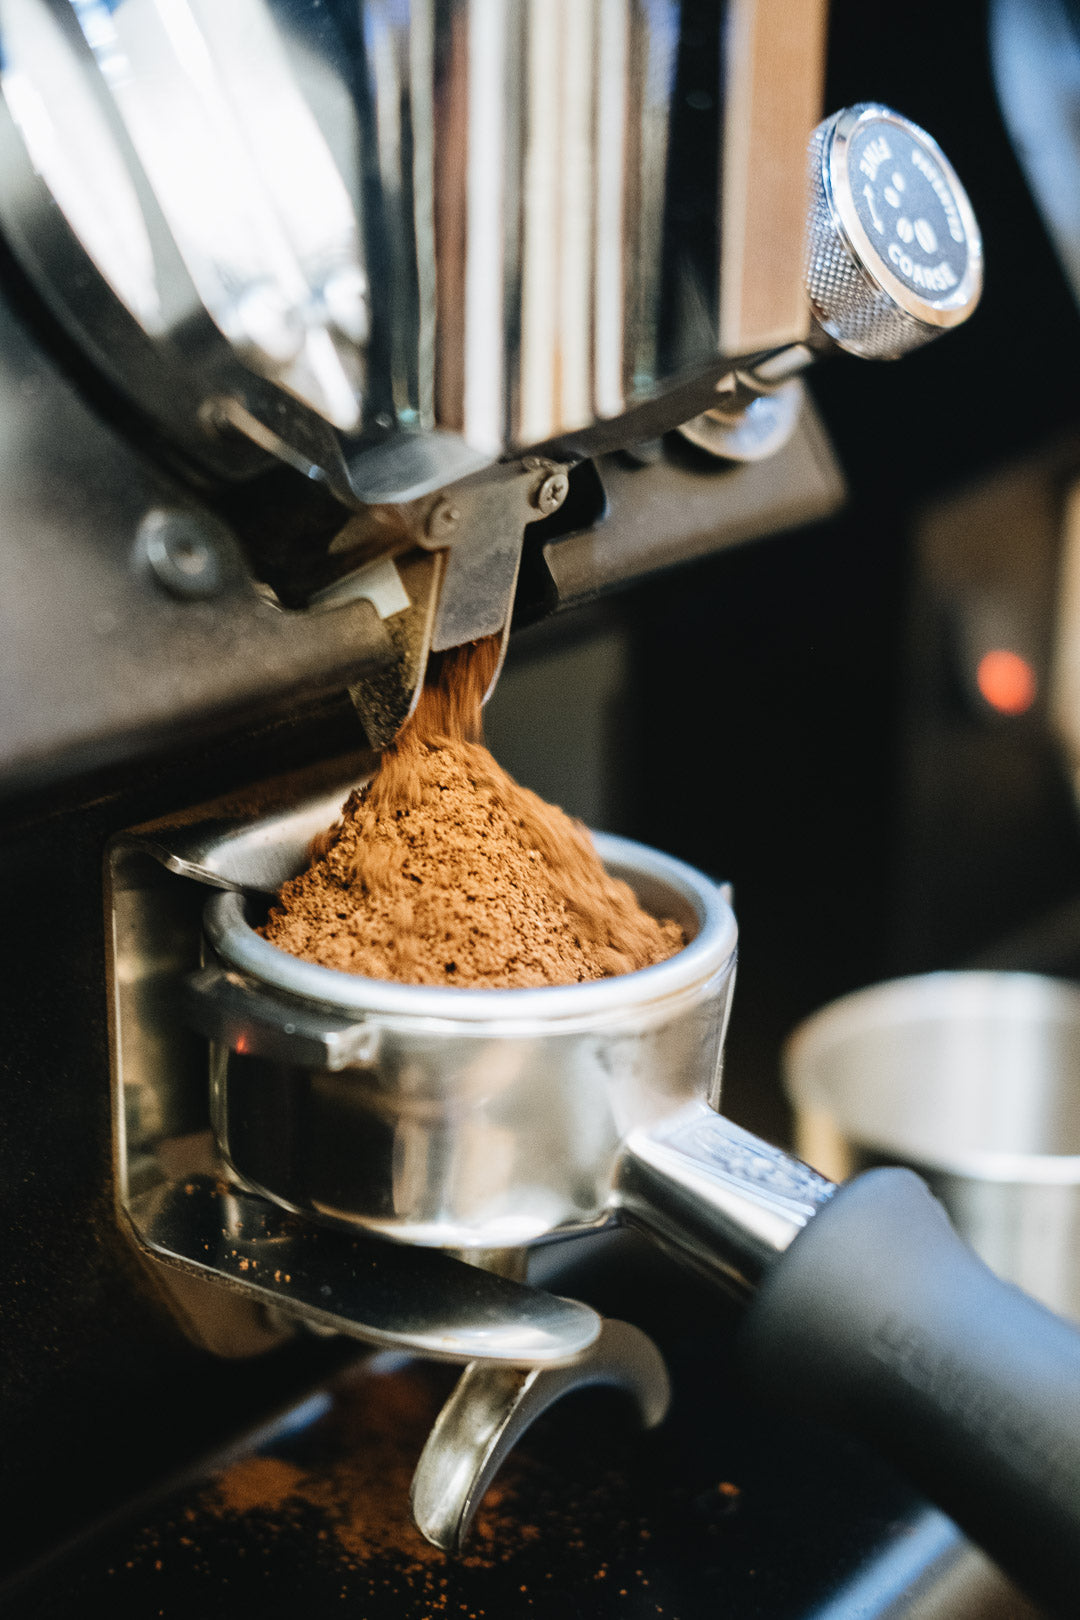 Home Espresso Making - Masterclass